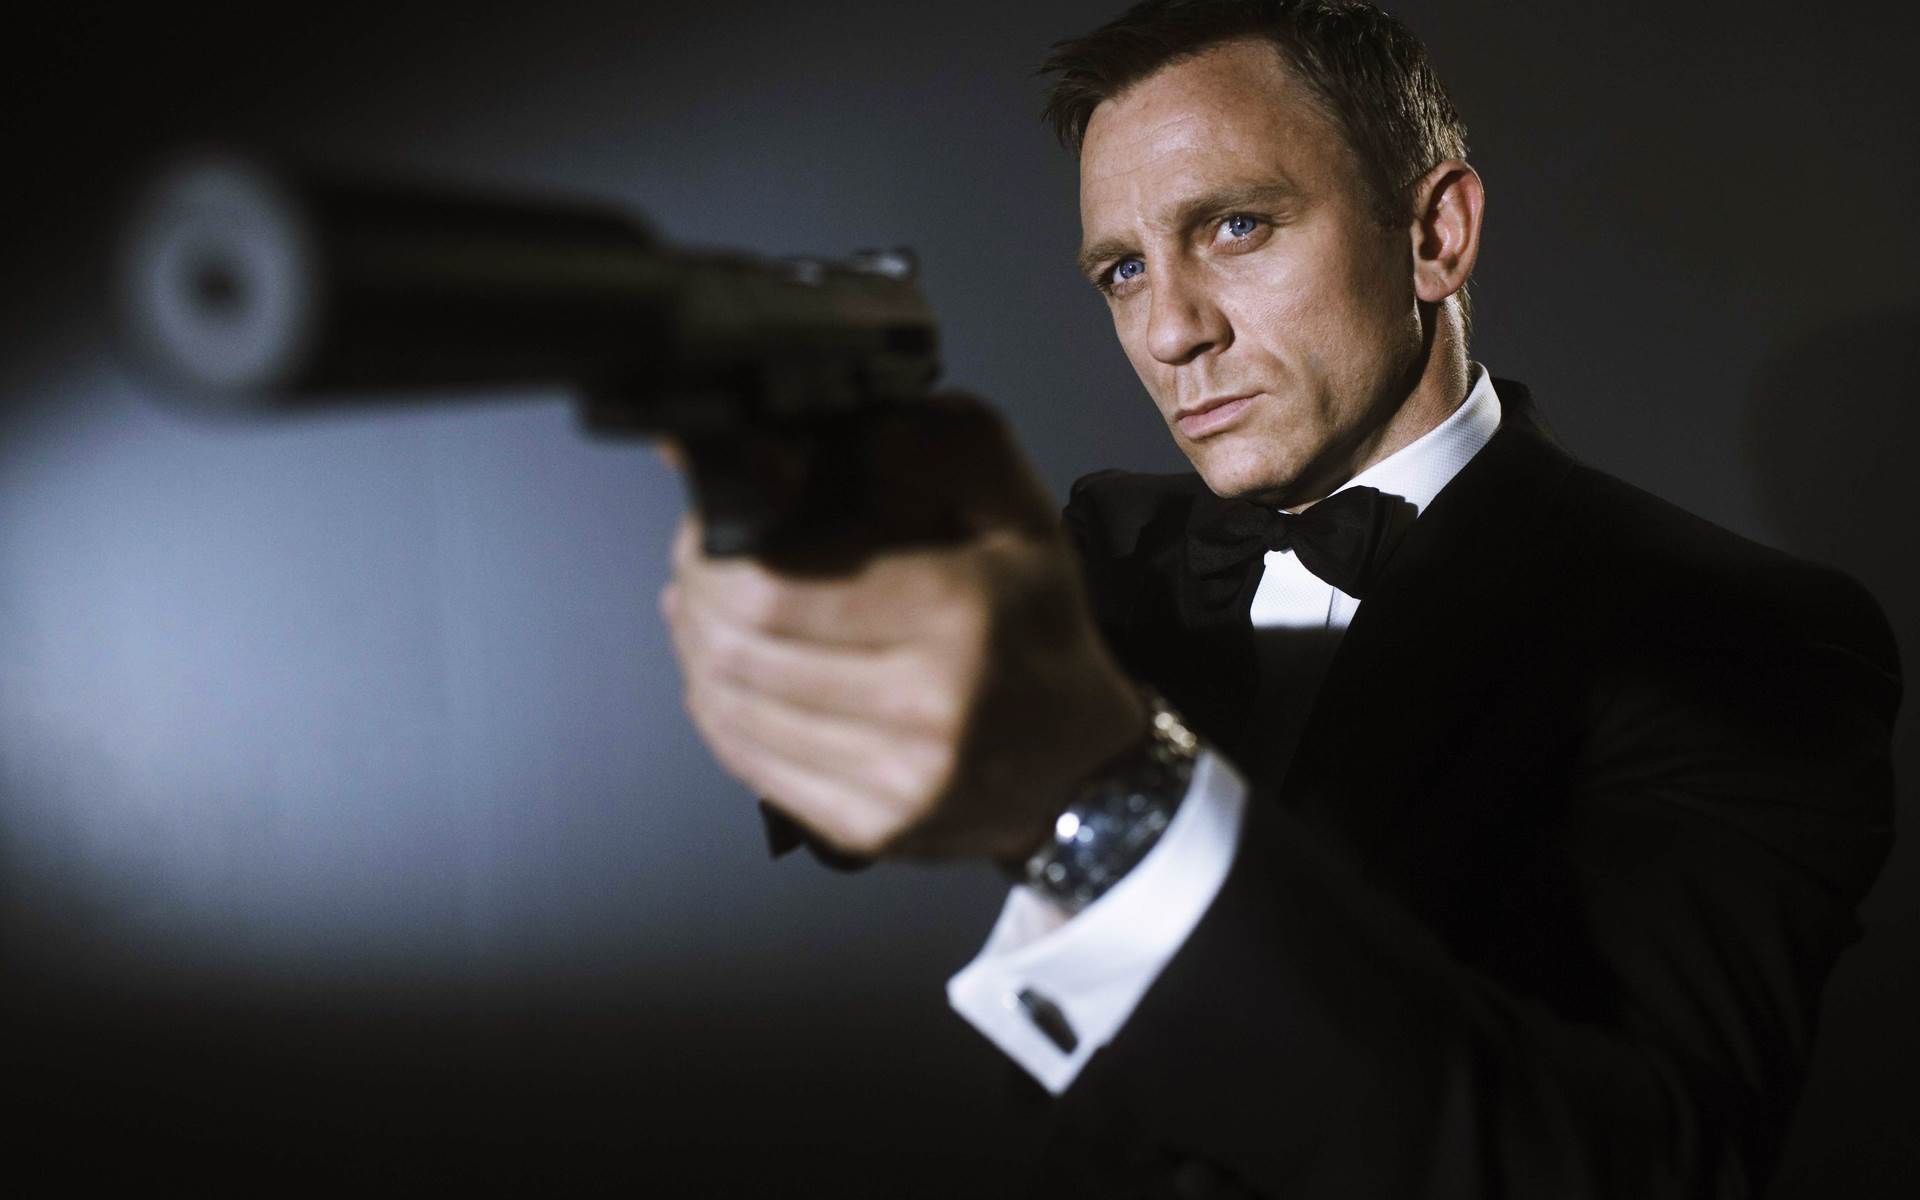 007 | Produtores querem ator escocês como novo James Bond, diz site